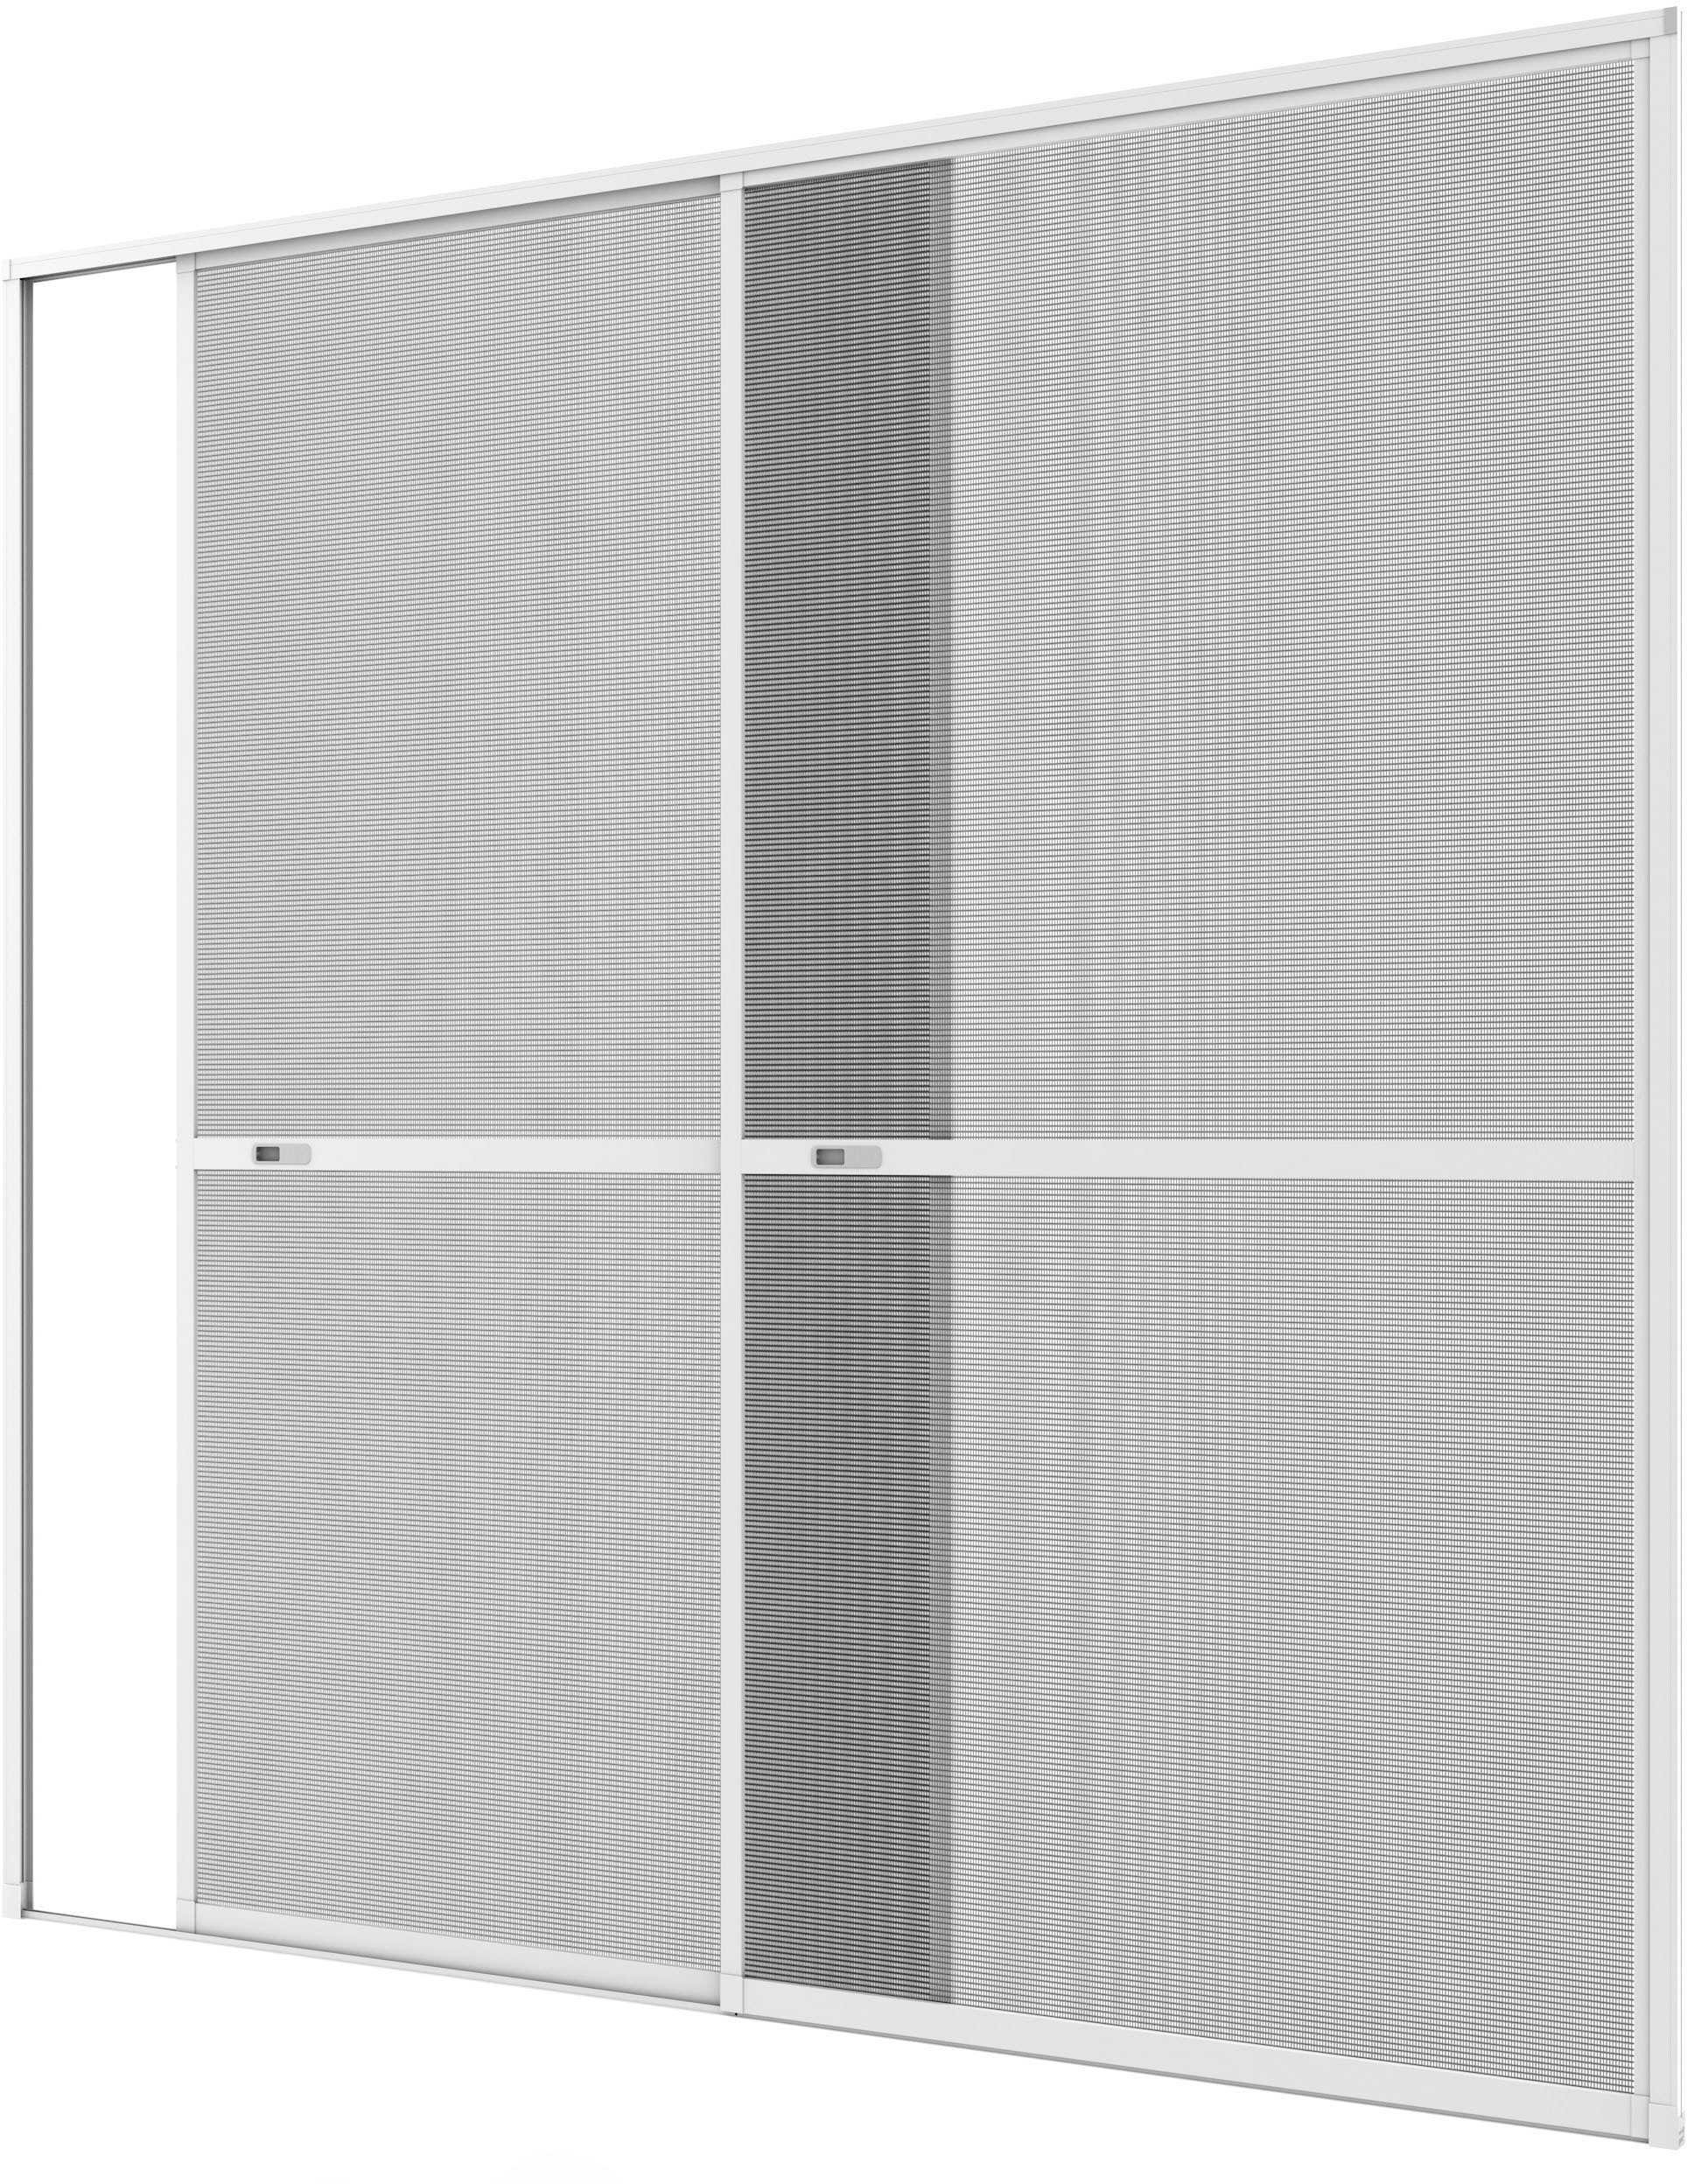 Insektenschutz-Tür »COMFORT«, weiß/anthrazit, BxH: 240x240 cm